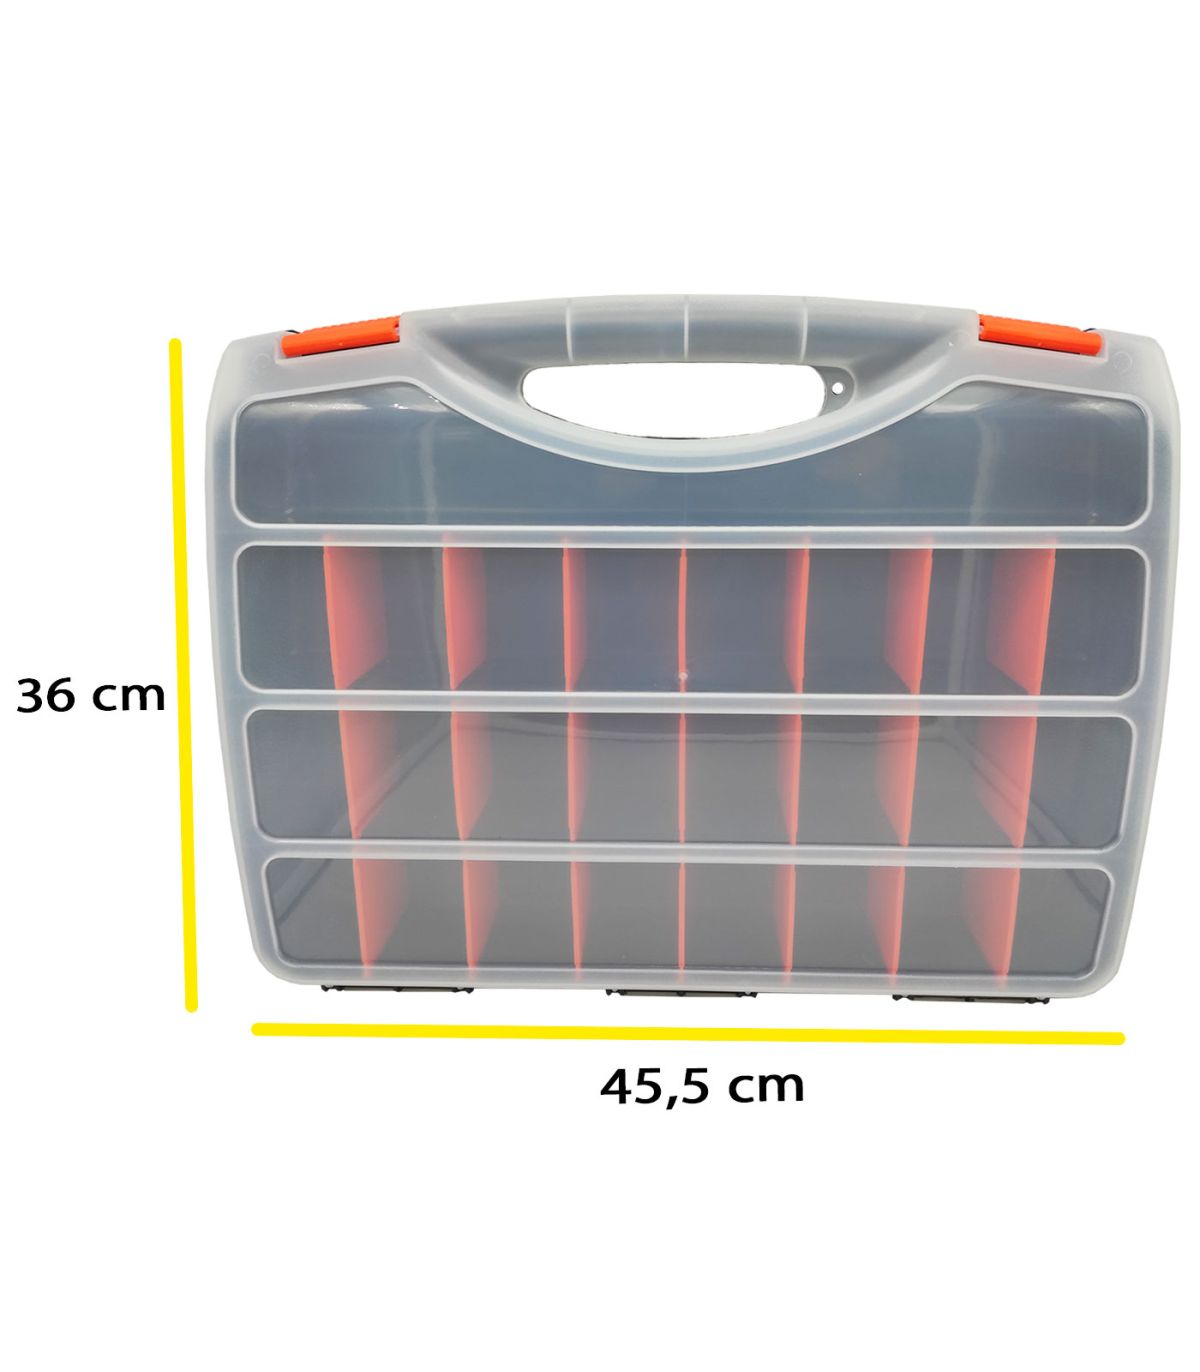 Tradineur - Caja de plástico con tapa y asa Nº24, transparente